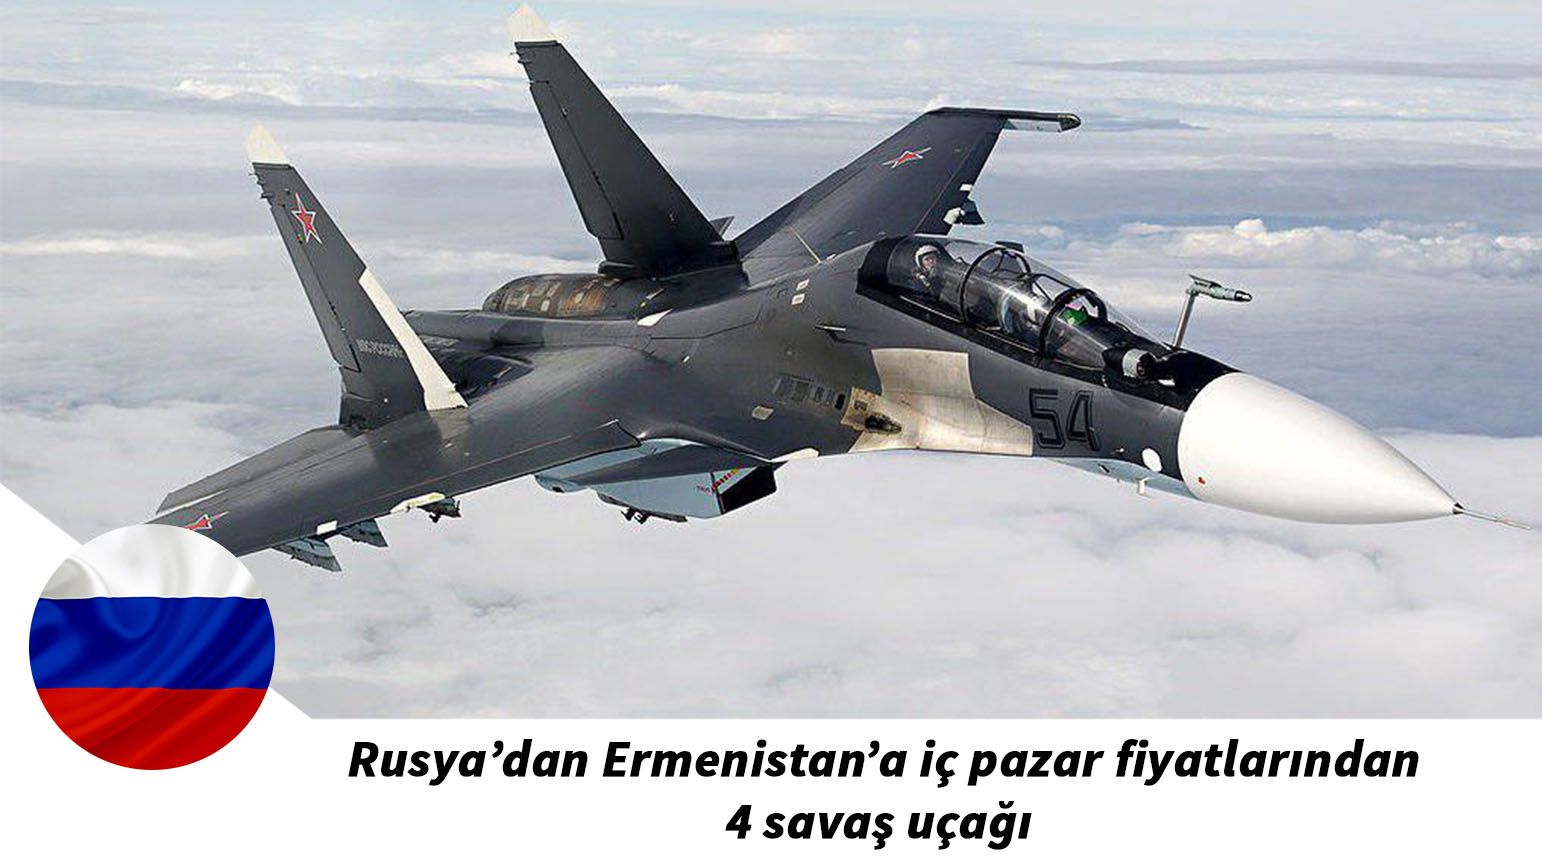 Rusya’dan Ermenistan’a iç pazar fiyatlarından 4 savaş uçağı